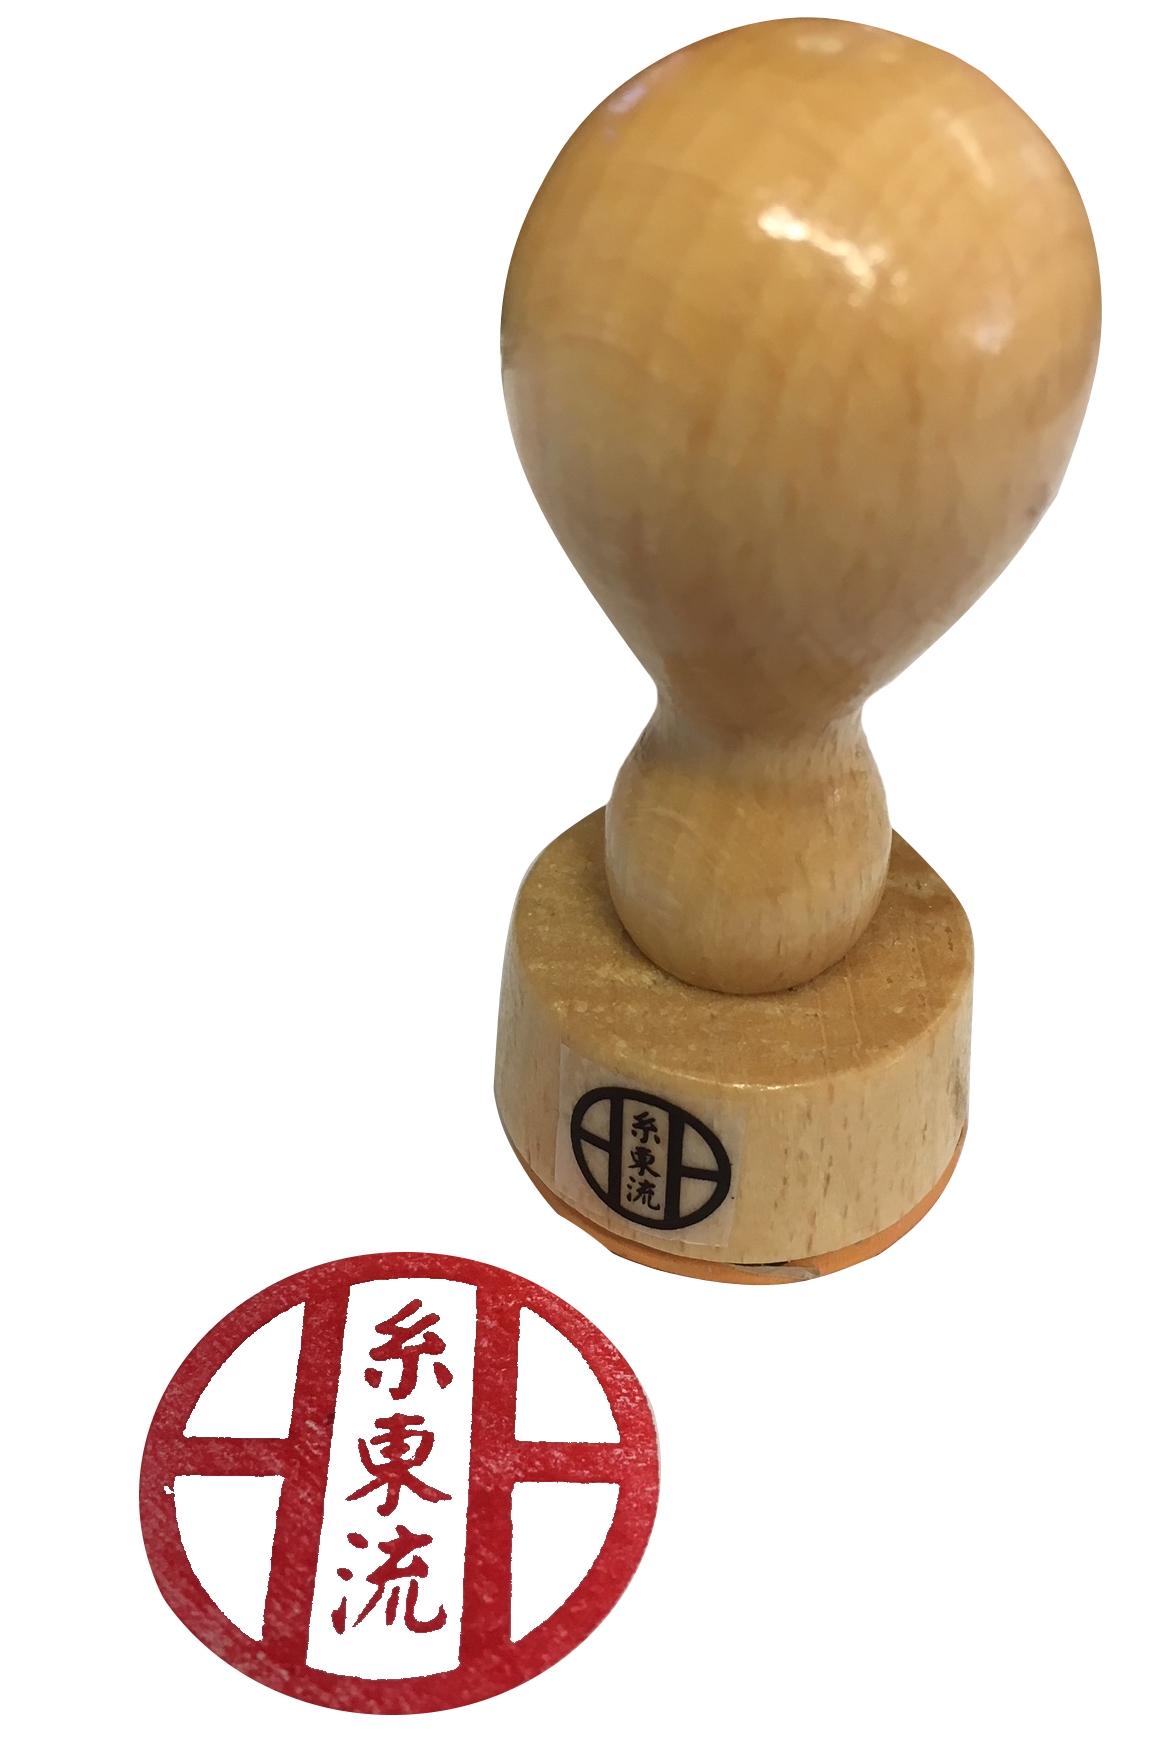 Shito-Ryu Dojo Stempel mit Logo und Text im Kreis angeordnet, rund 3 cm